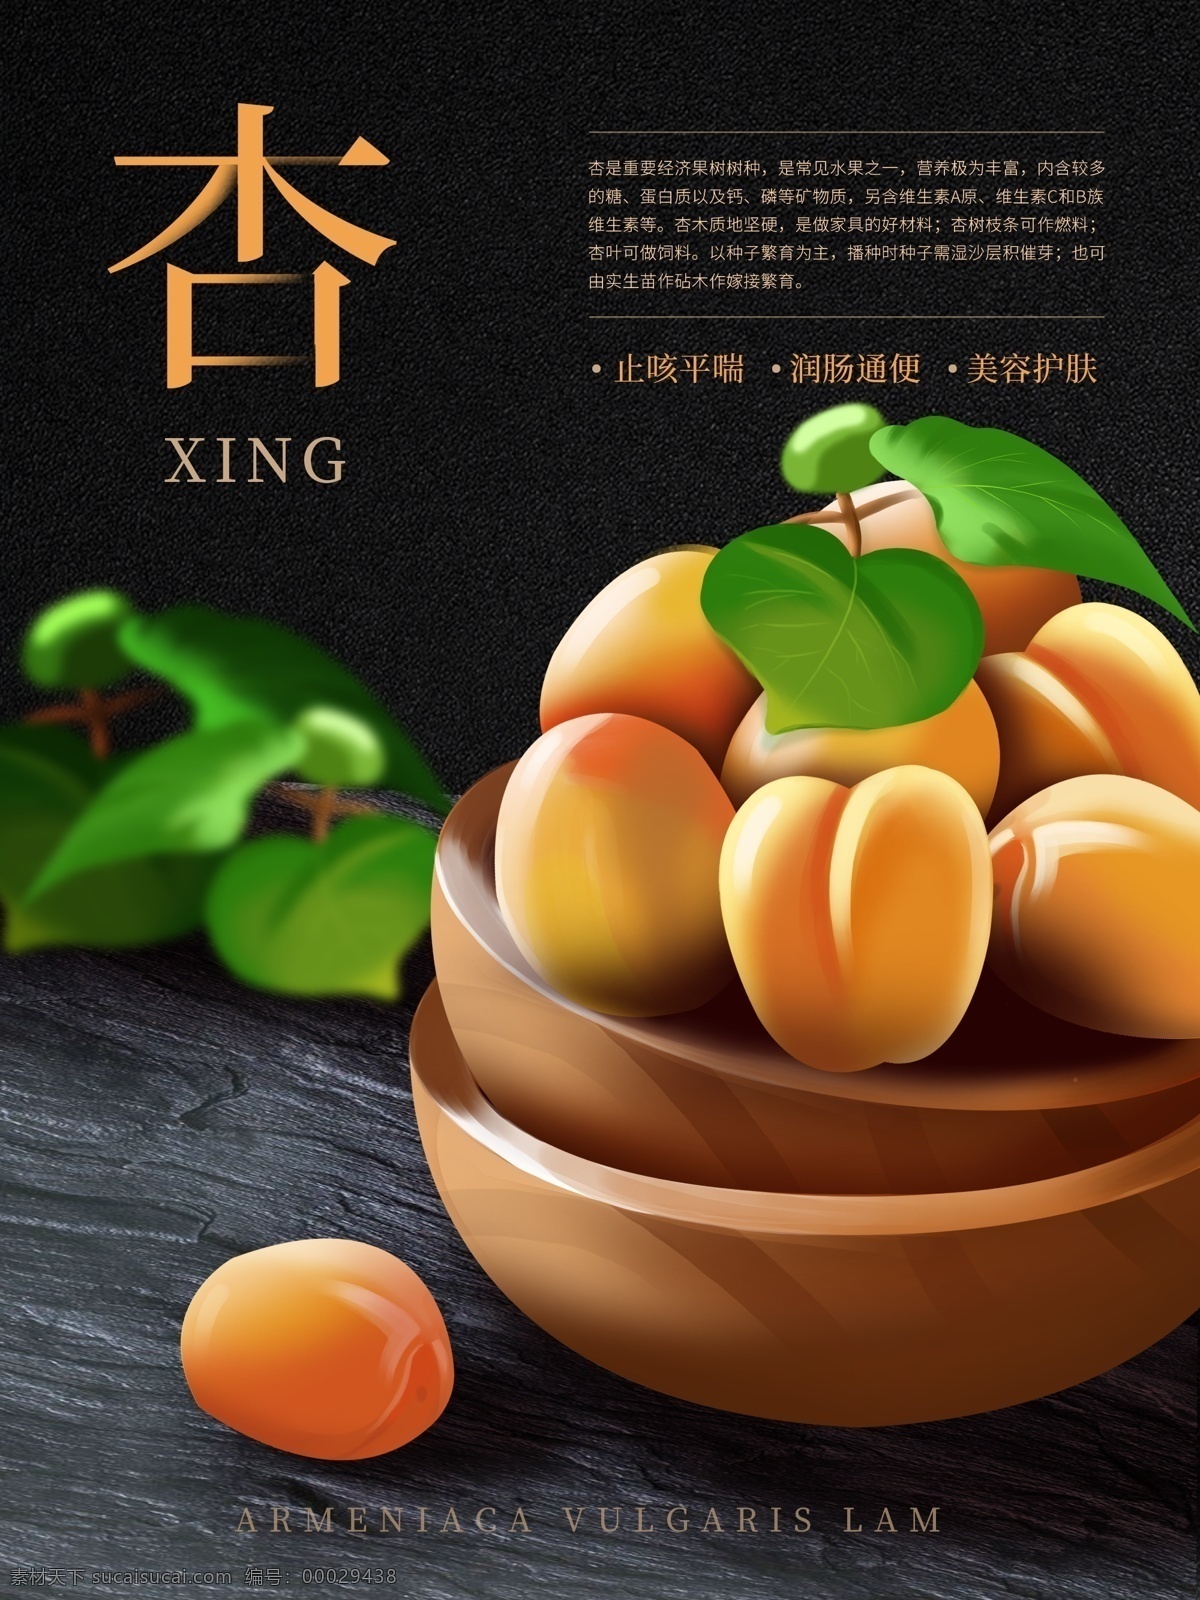 原创 插画 杏子 美食 水果 海报 原创插画 手绘 清新 文艺 食物主题海报